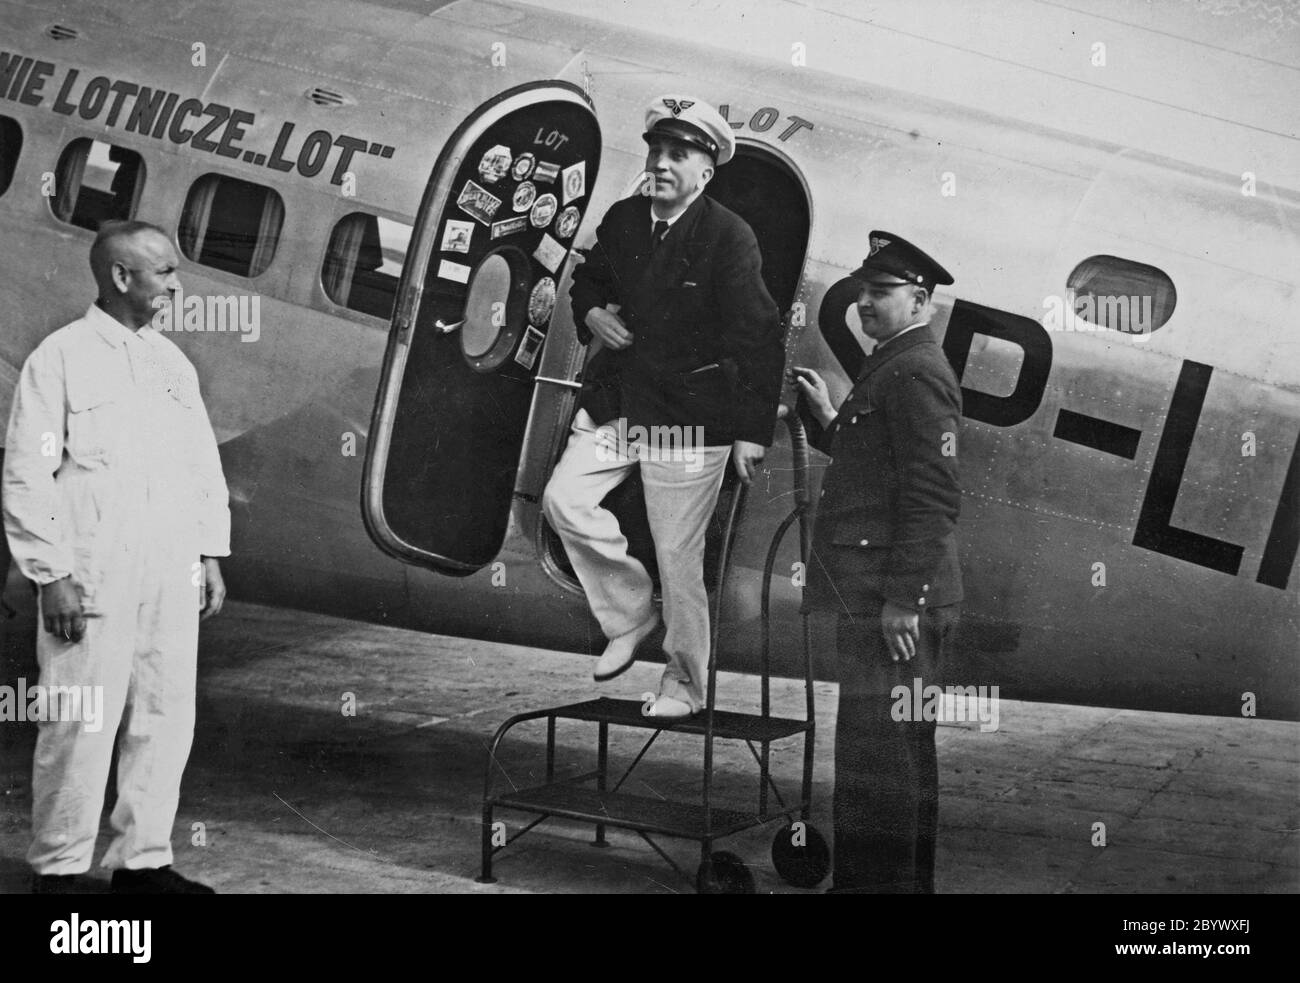 Flug PLL LOT Director Wacław Makowski auf der Lockheed L-14 Super Electra Maschine auf der Strecke Los Angeles-Mittelamerika-Südamerika-Atlantik-Afrika-Rom. PLL LOT Director Pilot Wacław Makowski steigt aus der Lockheed L-14 super Electra; Warschau, 5. Juni 1938. Stockfoto